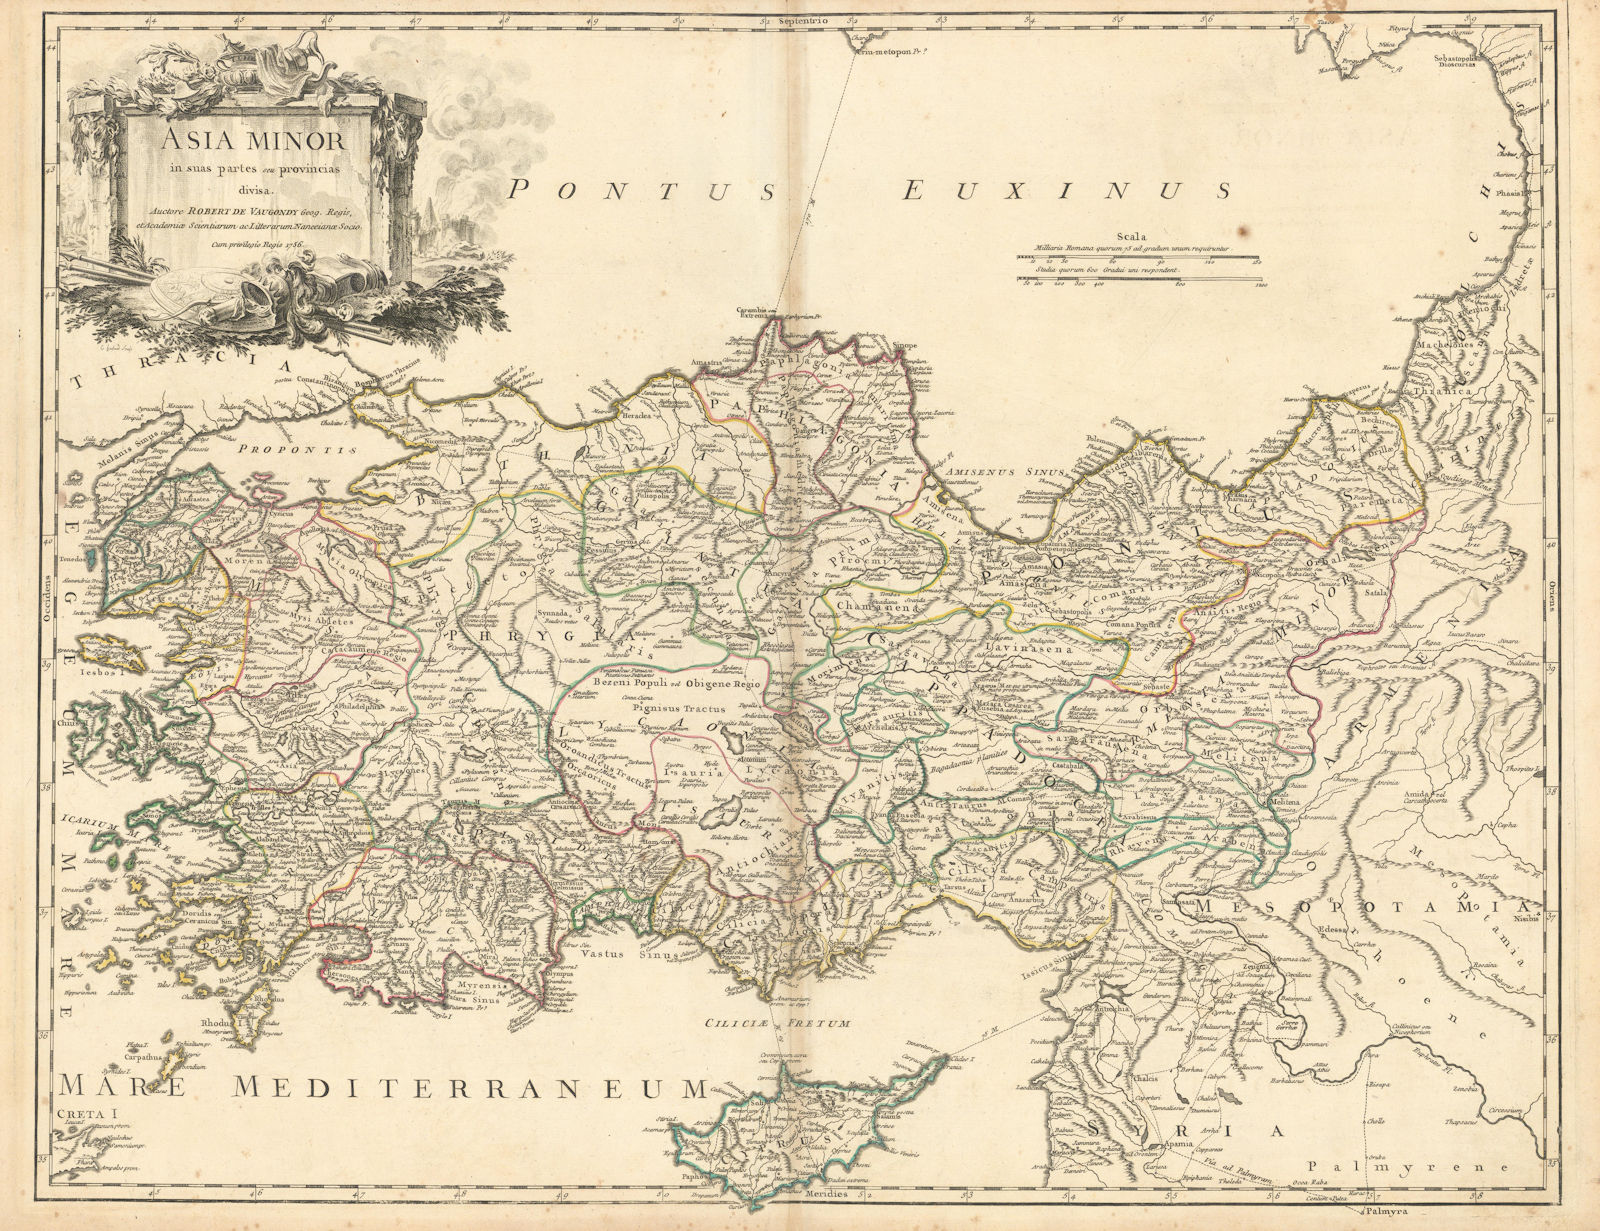 "Asia Minor in suas partes seu provincias divisa". Turkey. VAUGONDY 1756 map